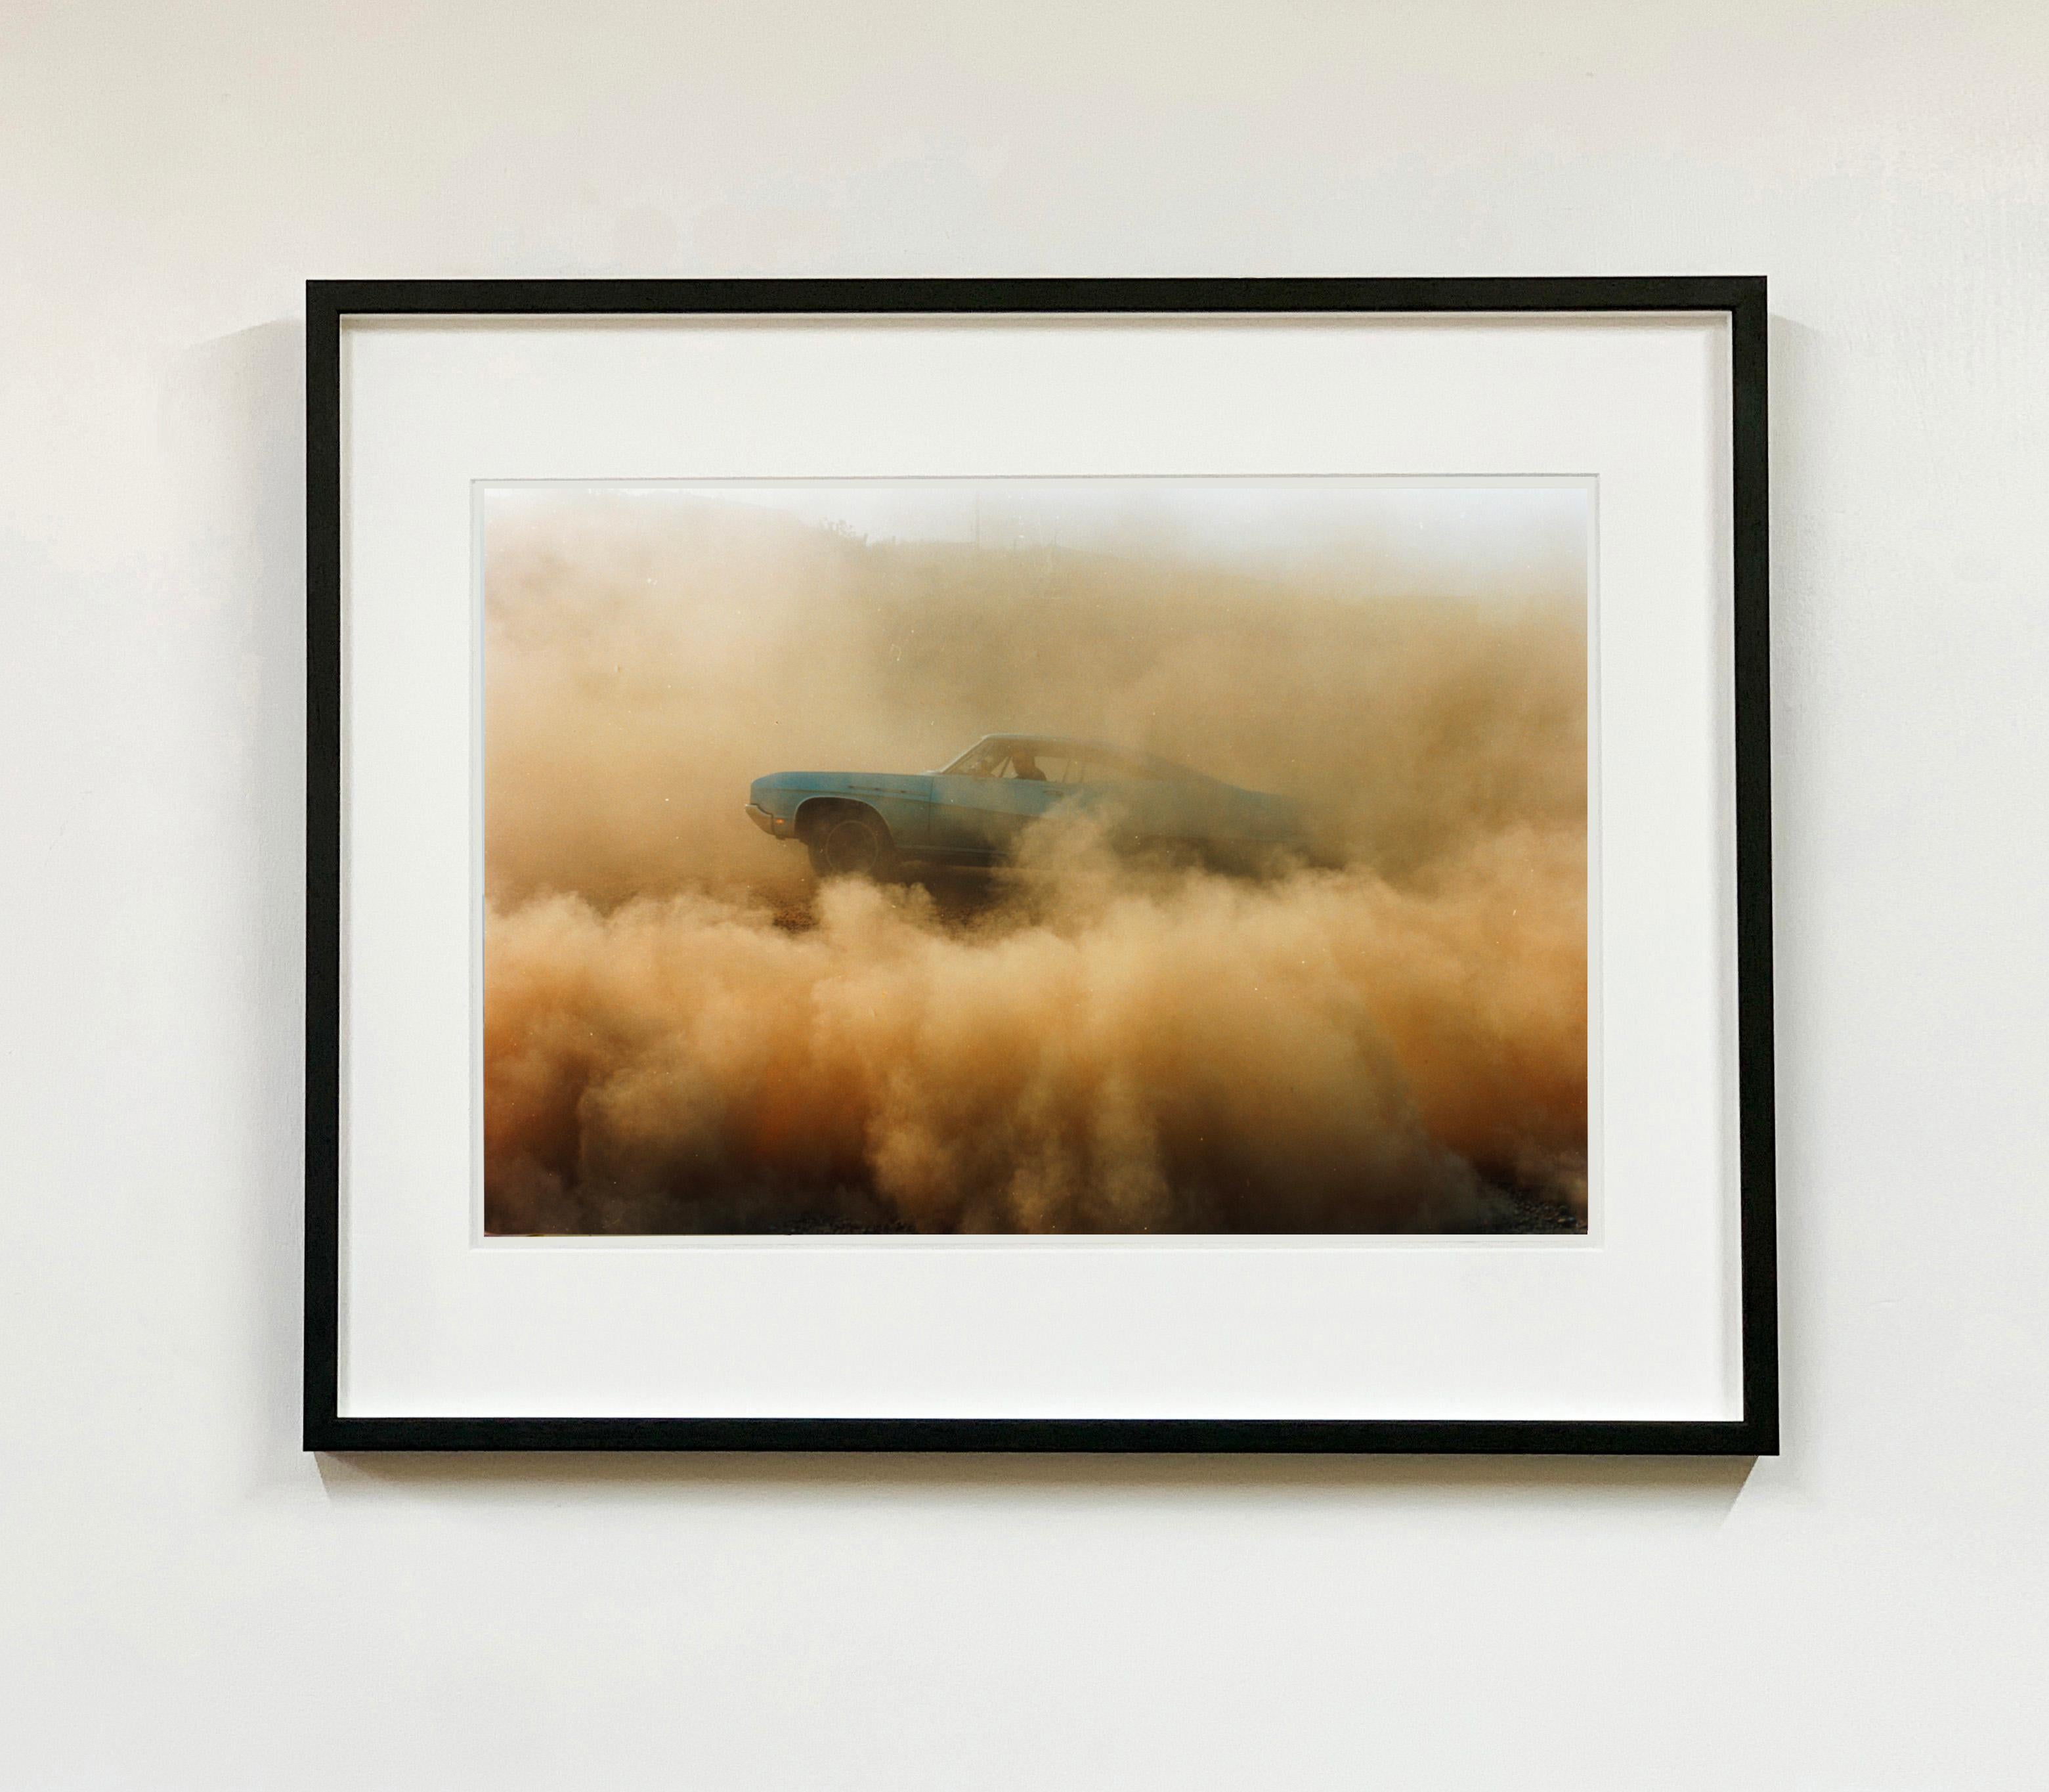 Buick in the Dust I, Hemsby, Norfolk – Farbfotografie eines Autos – Print von Richard Heeps